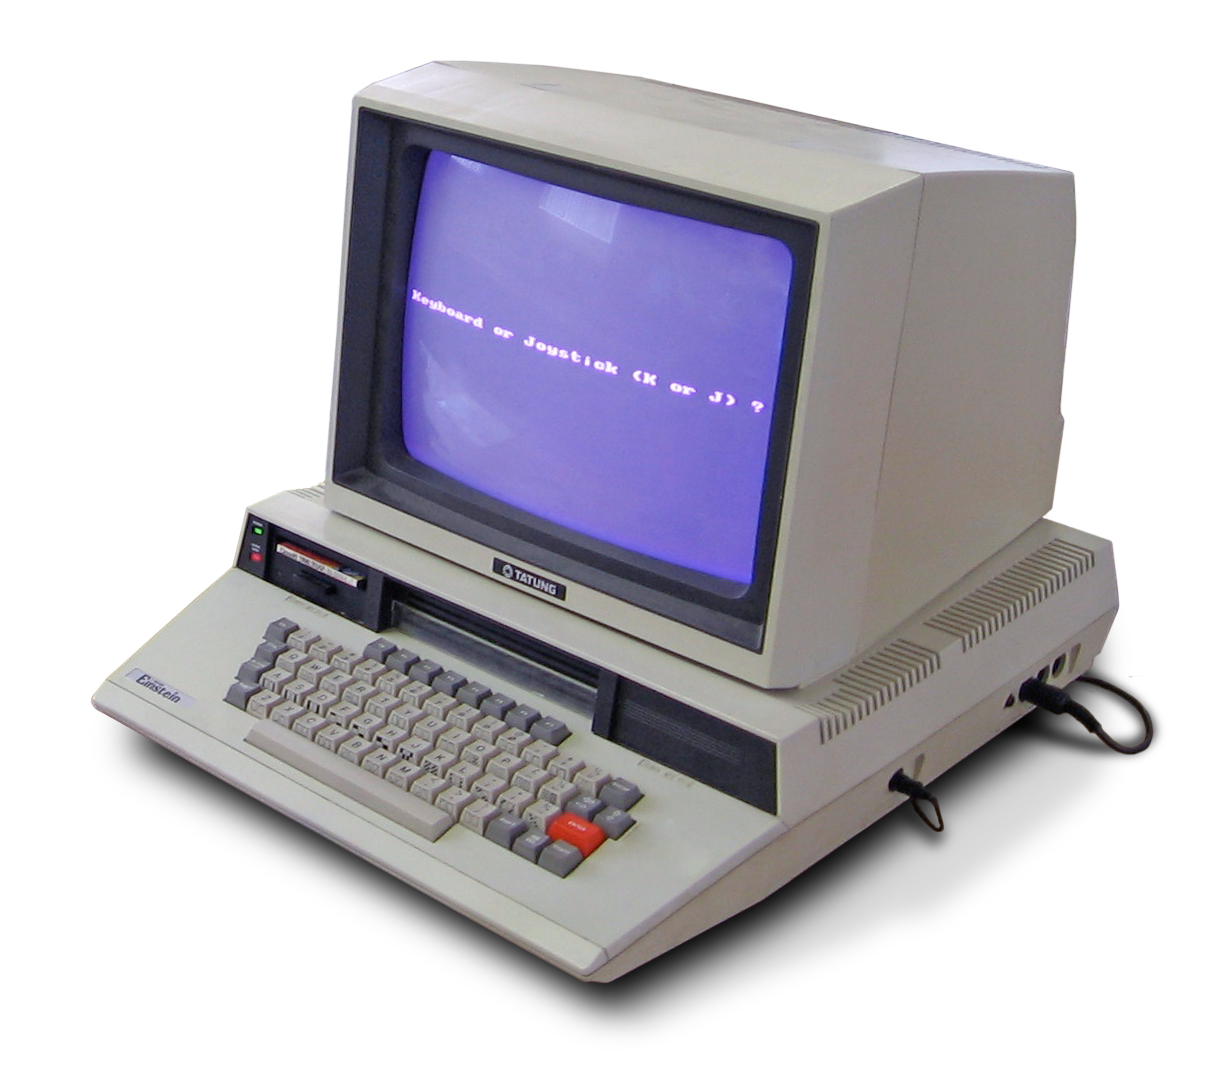 Informatique à Domicile.: Images de vieux ordinateurs: #geek #vintage #